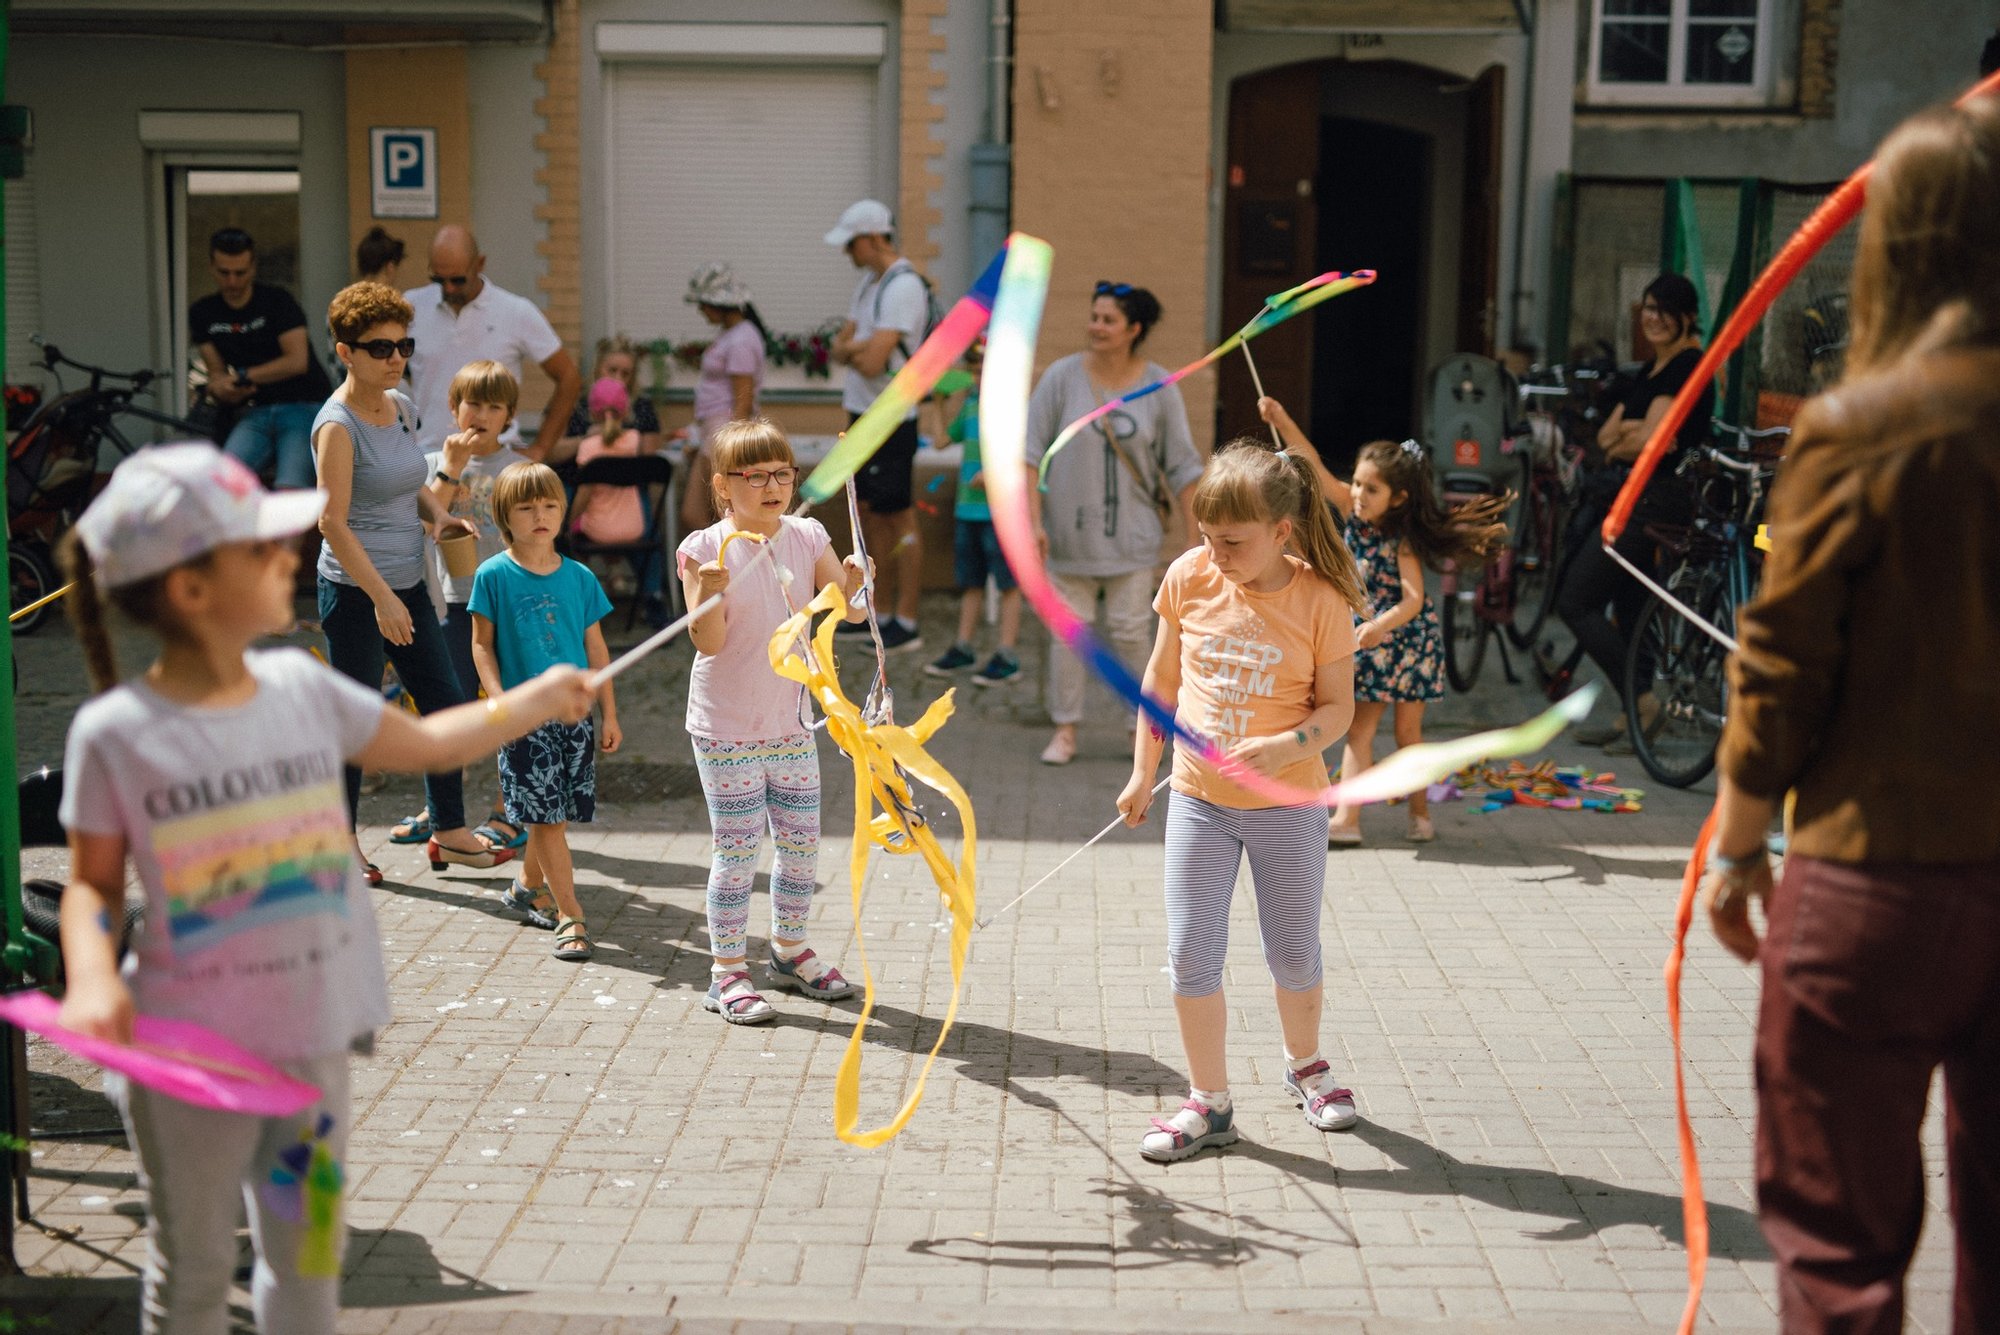 Pozioma, kolorowa fotografia przedstawia grupę dzieci w różnym wieku bawiących się szarfami.